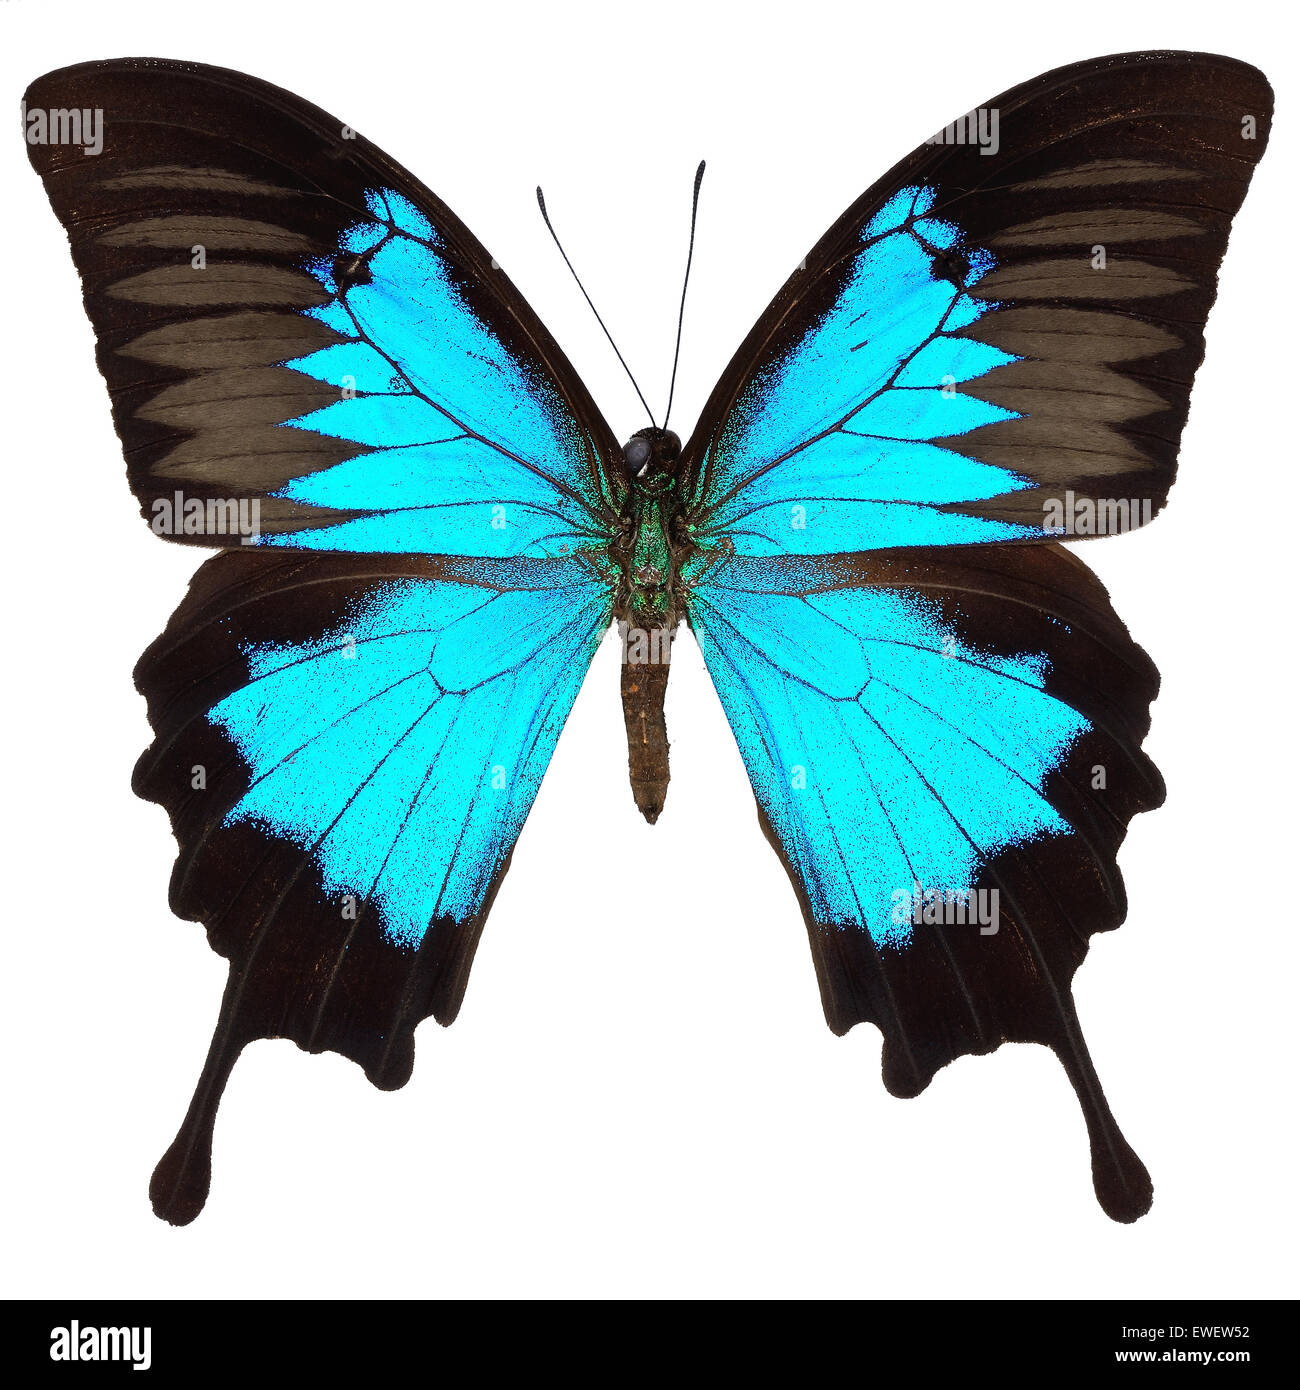 Beau papillon bleu, bleu, bleu de la montagne de l'empereur (Papilio ulysses), isolé sur fond blanc Banque D'Images